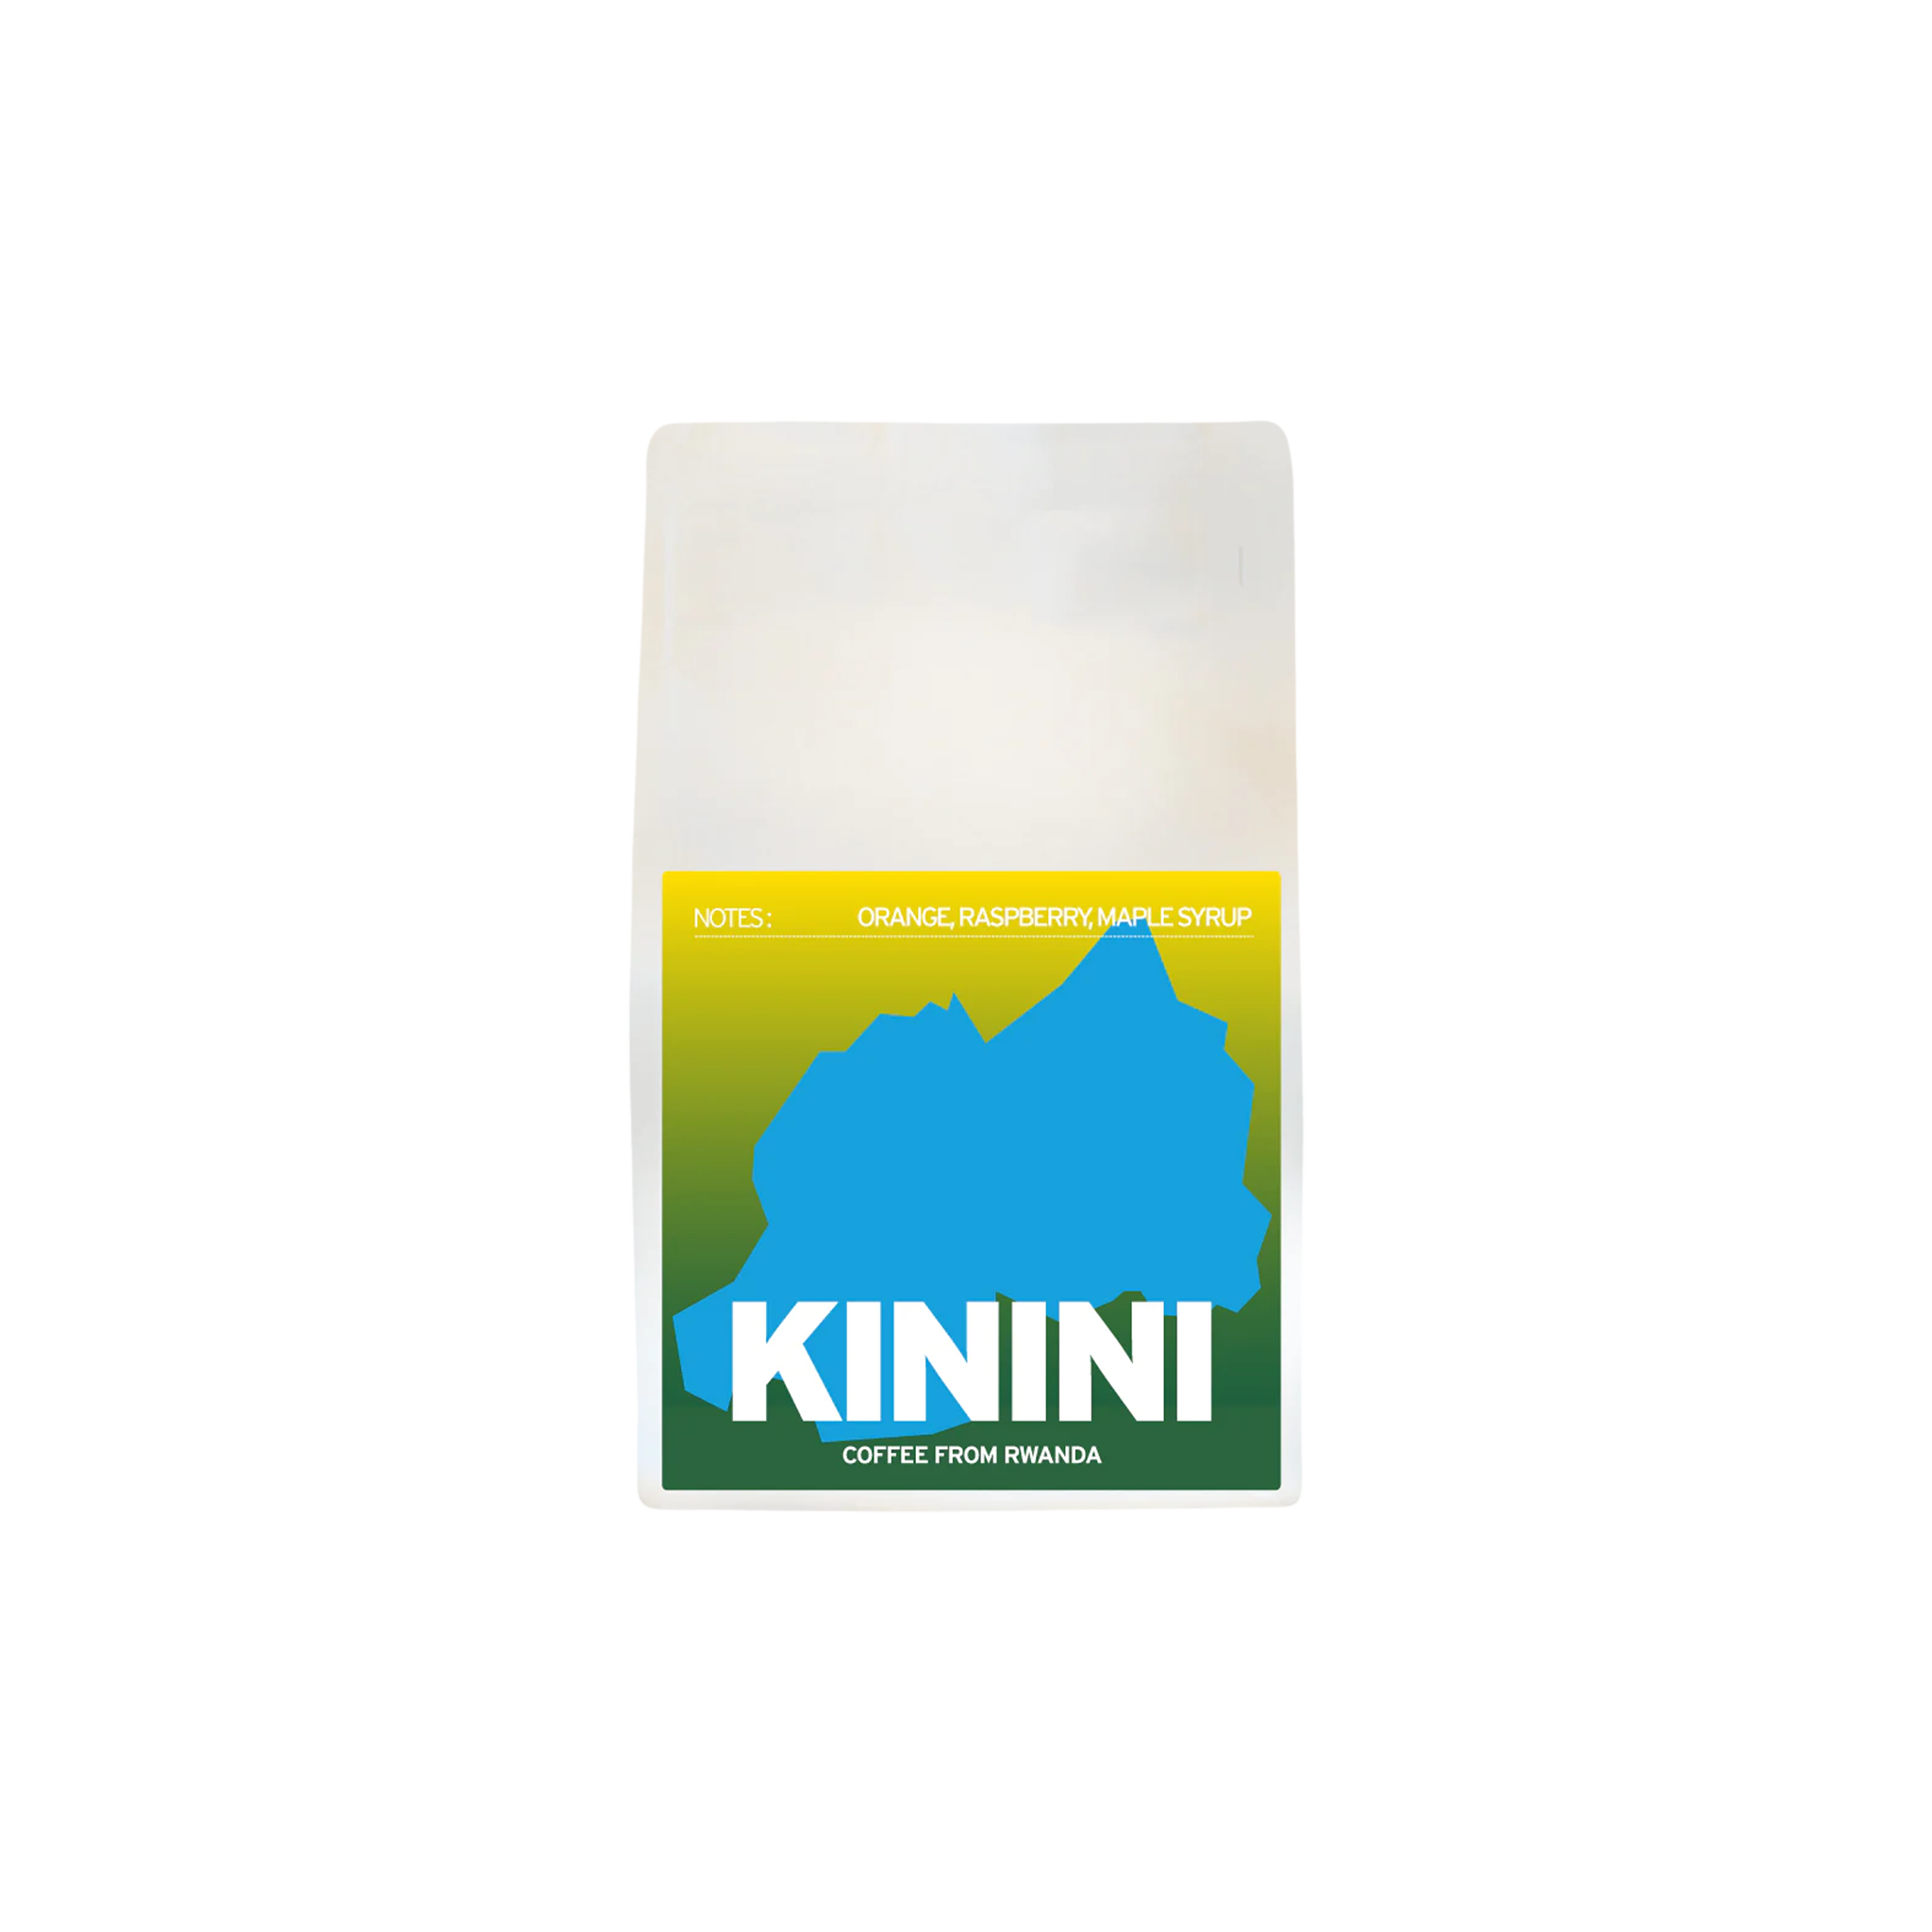 Kinini - St. Martin's Coffee Roasters - Rwanda